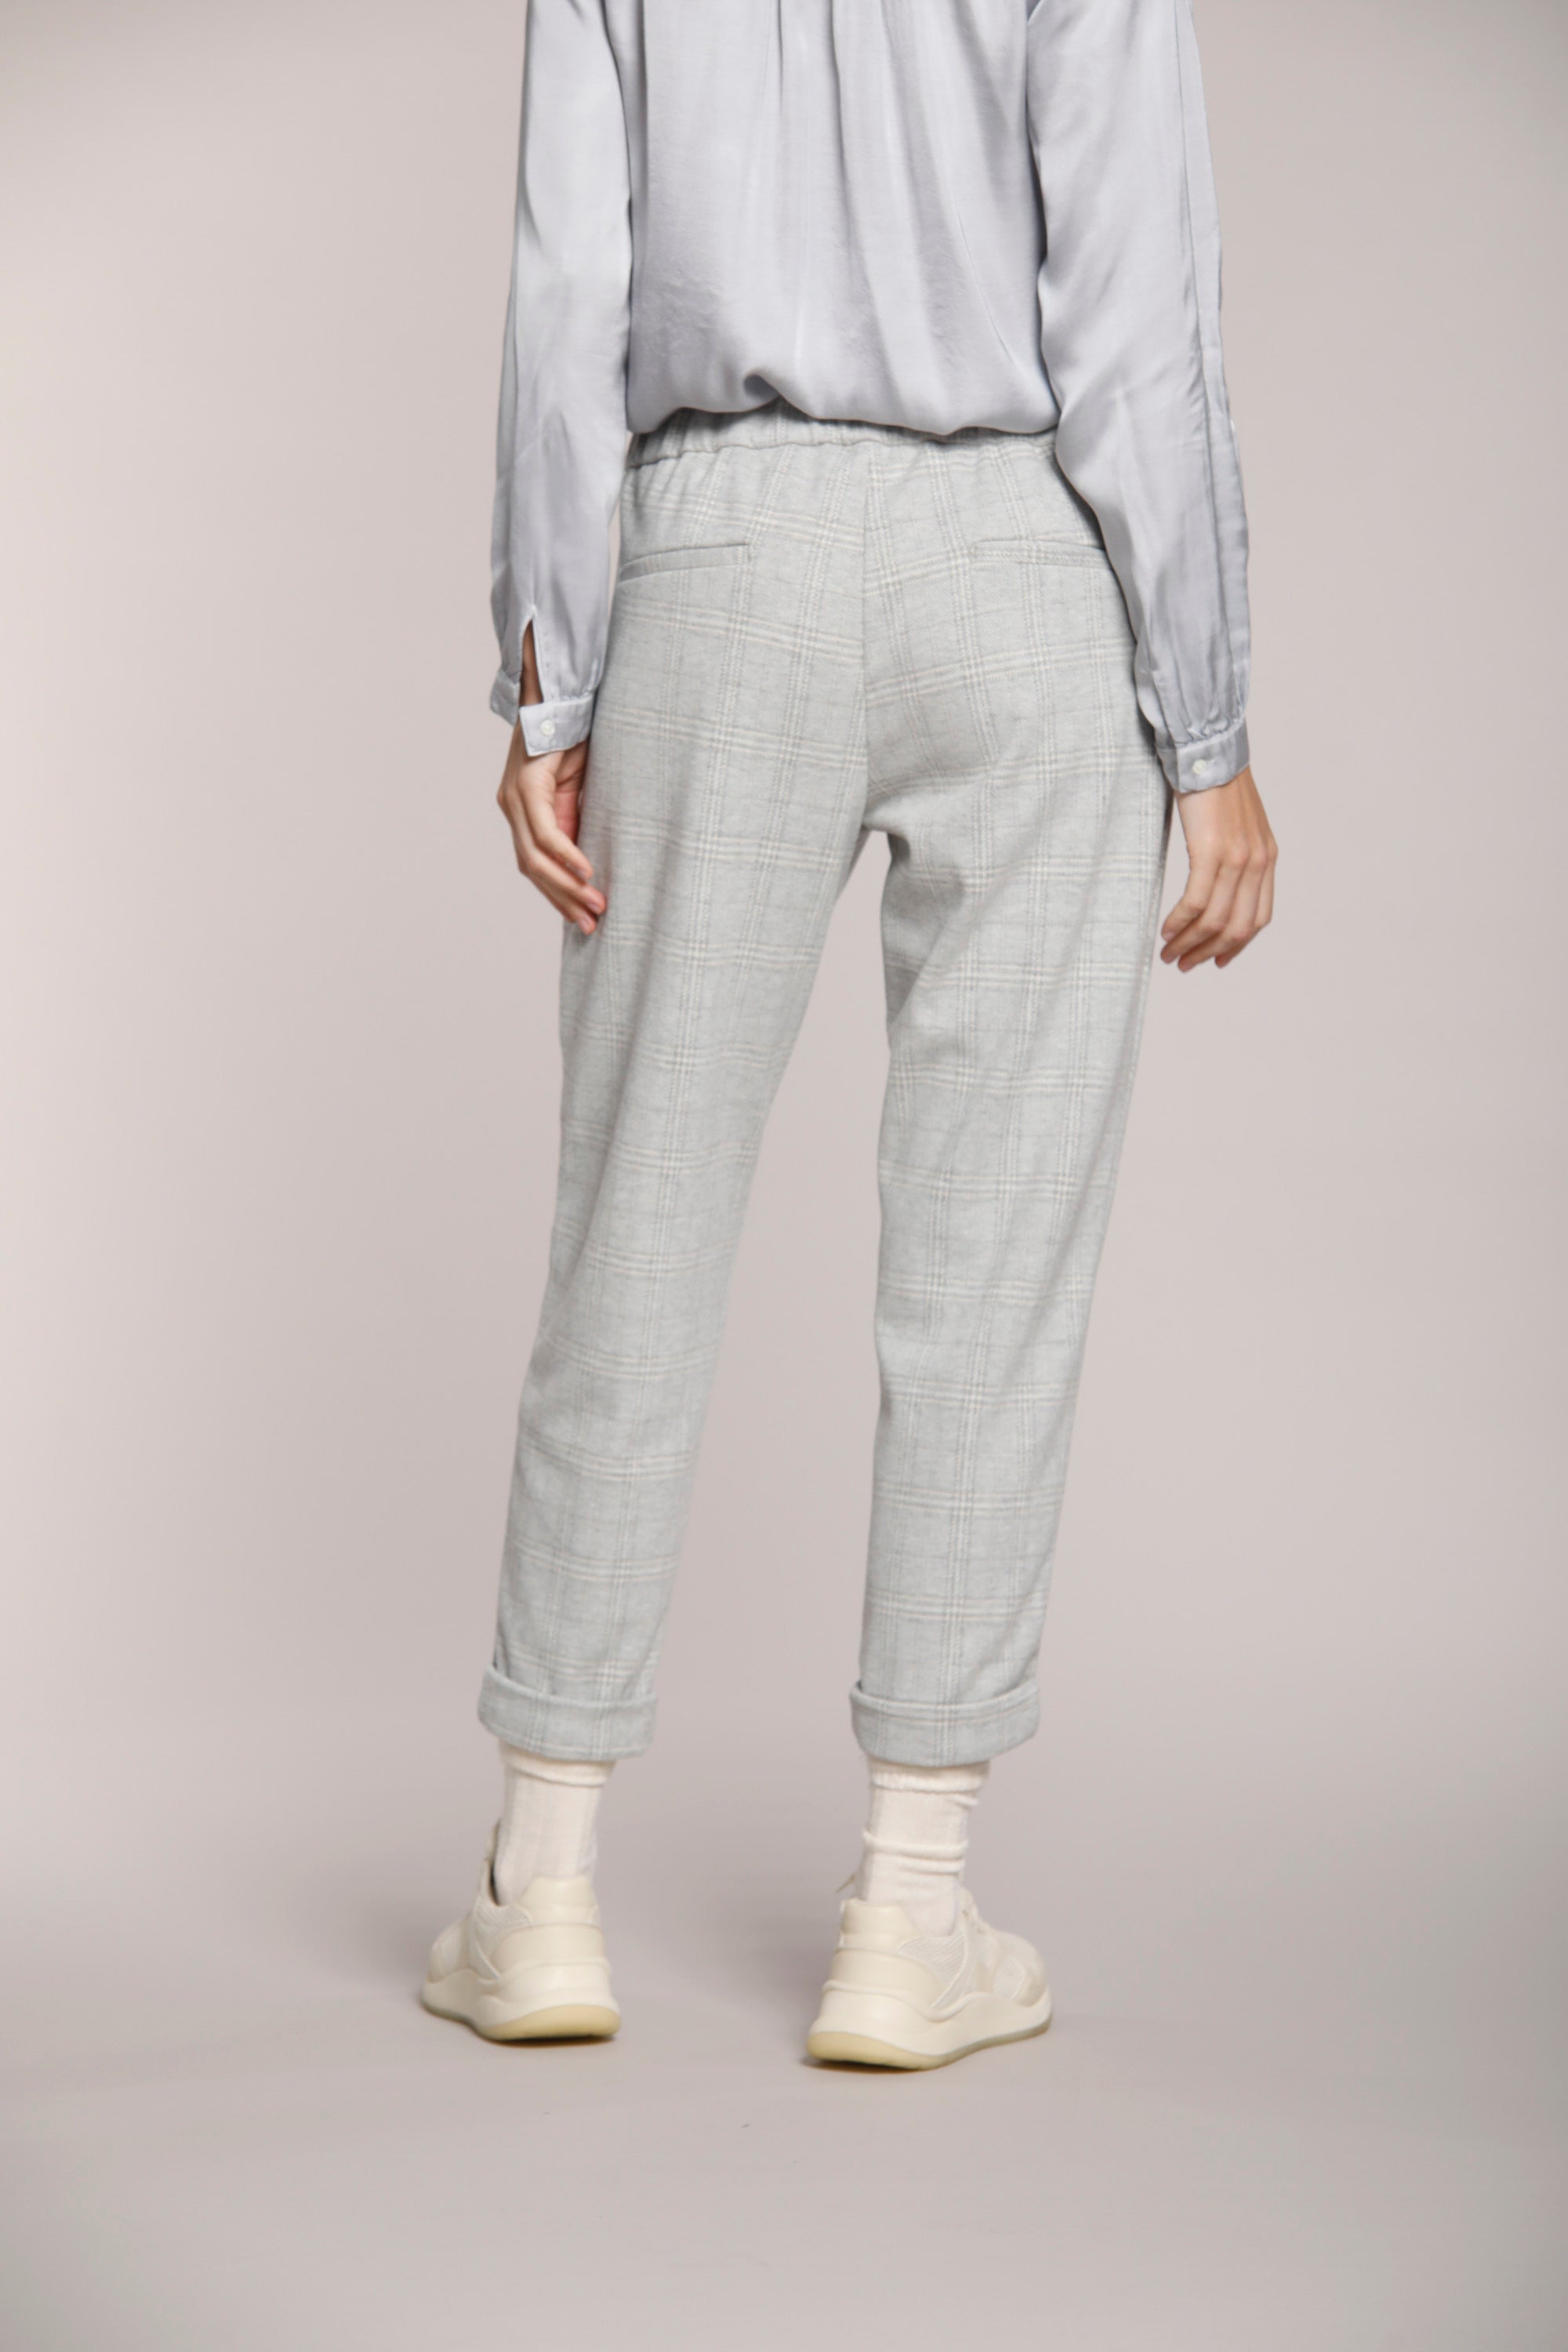 Immagine 5 di pantalone chino donna in jersey, con pattern galles, colore grgio chiaro, modello Easy Jogger di Mason's